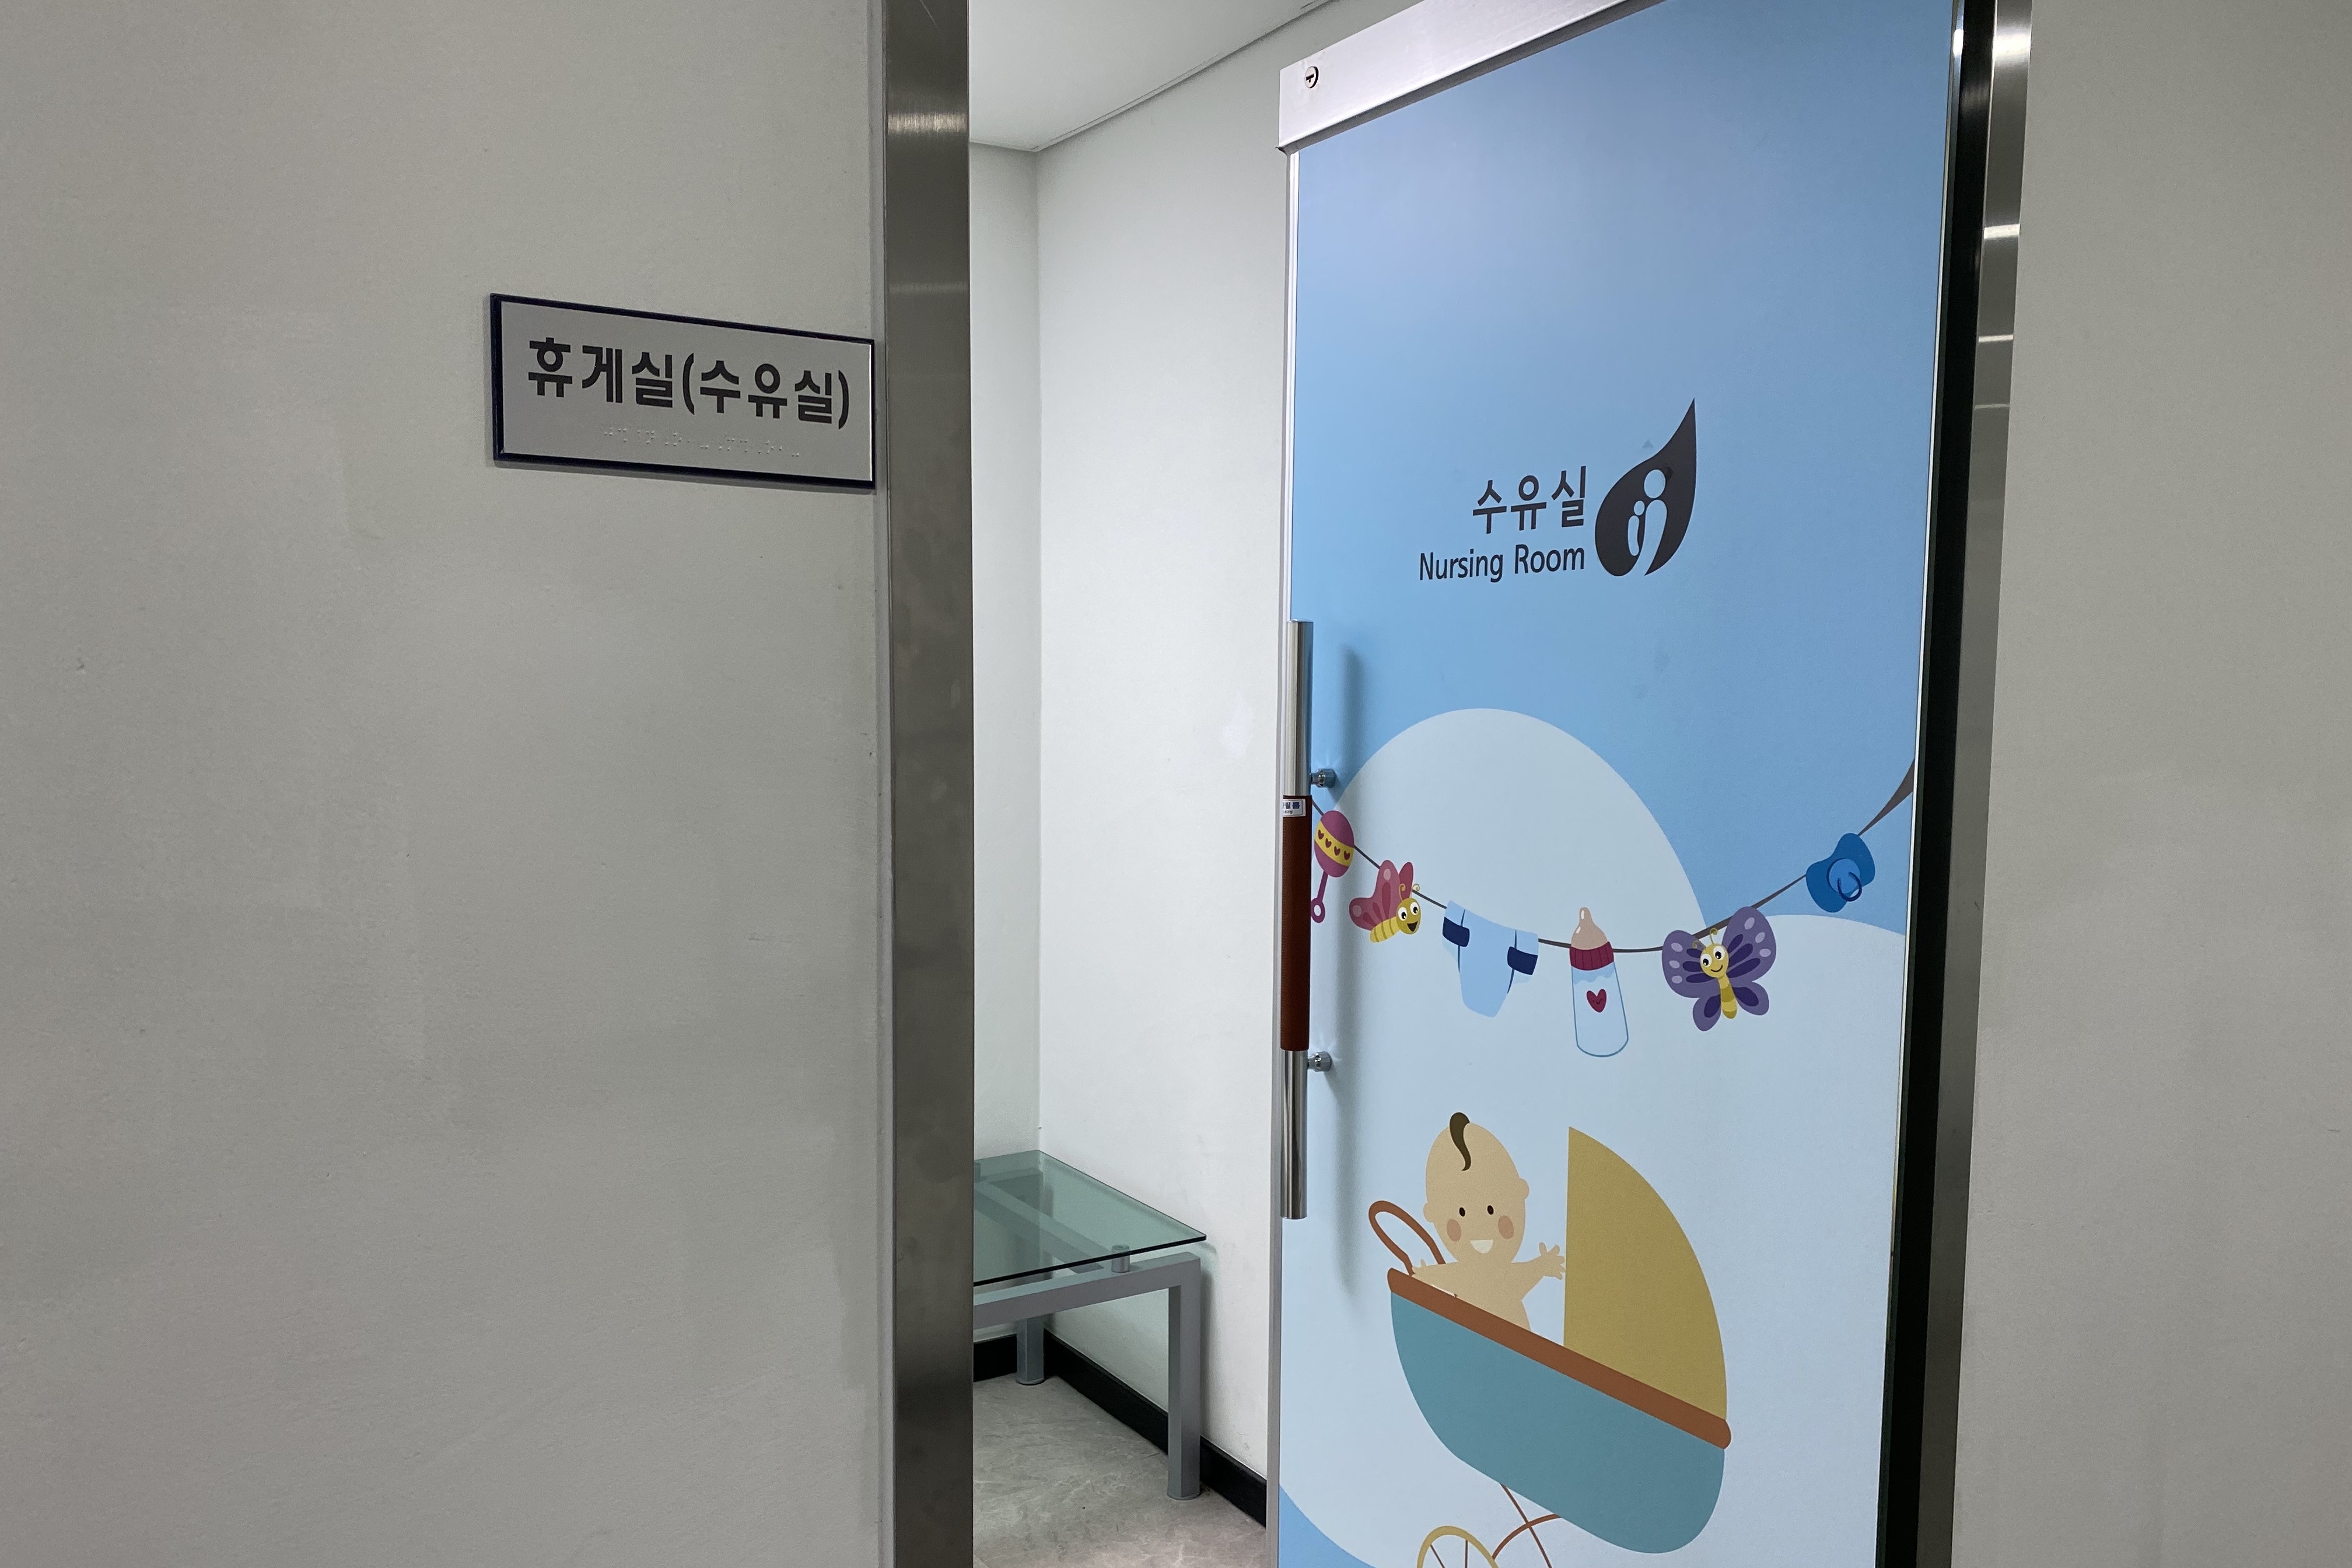 영유아휴게공간0 : 불암산 나비정원 수유실 입구 전경